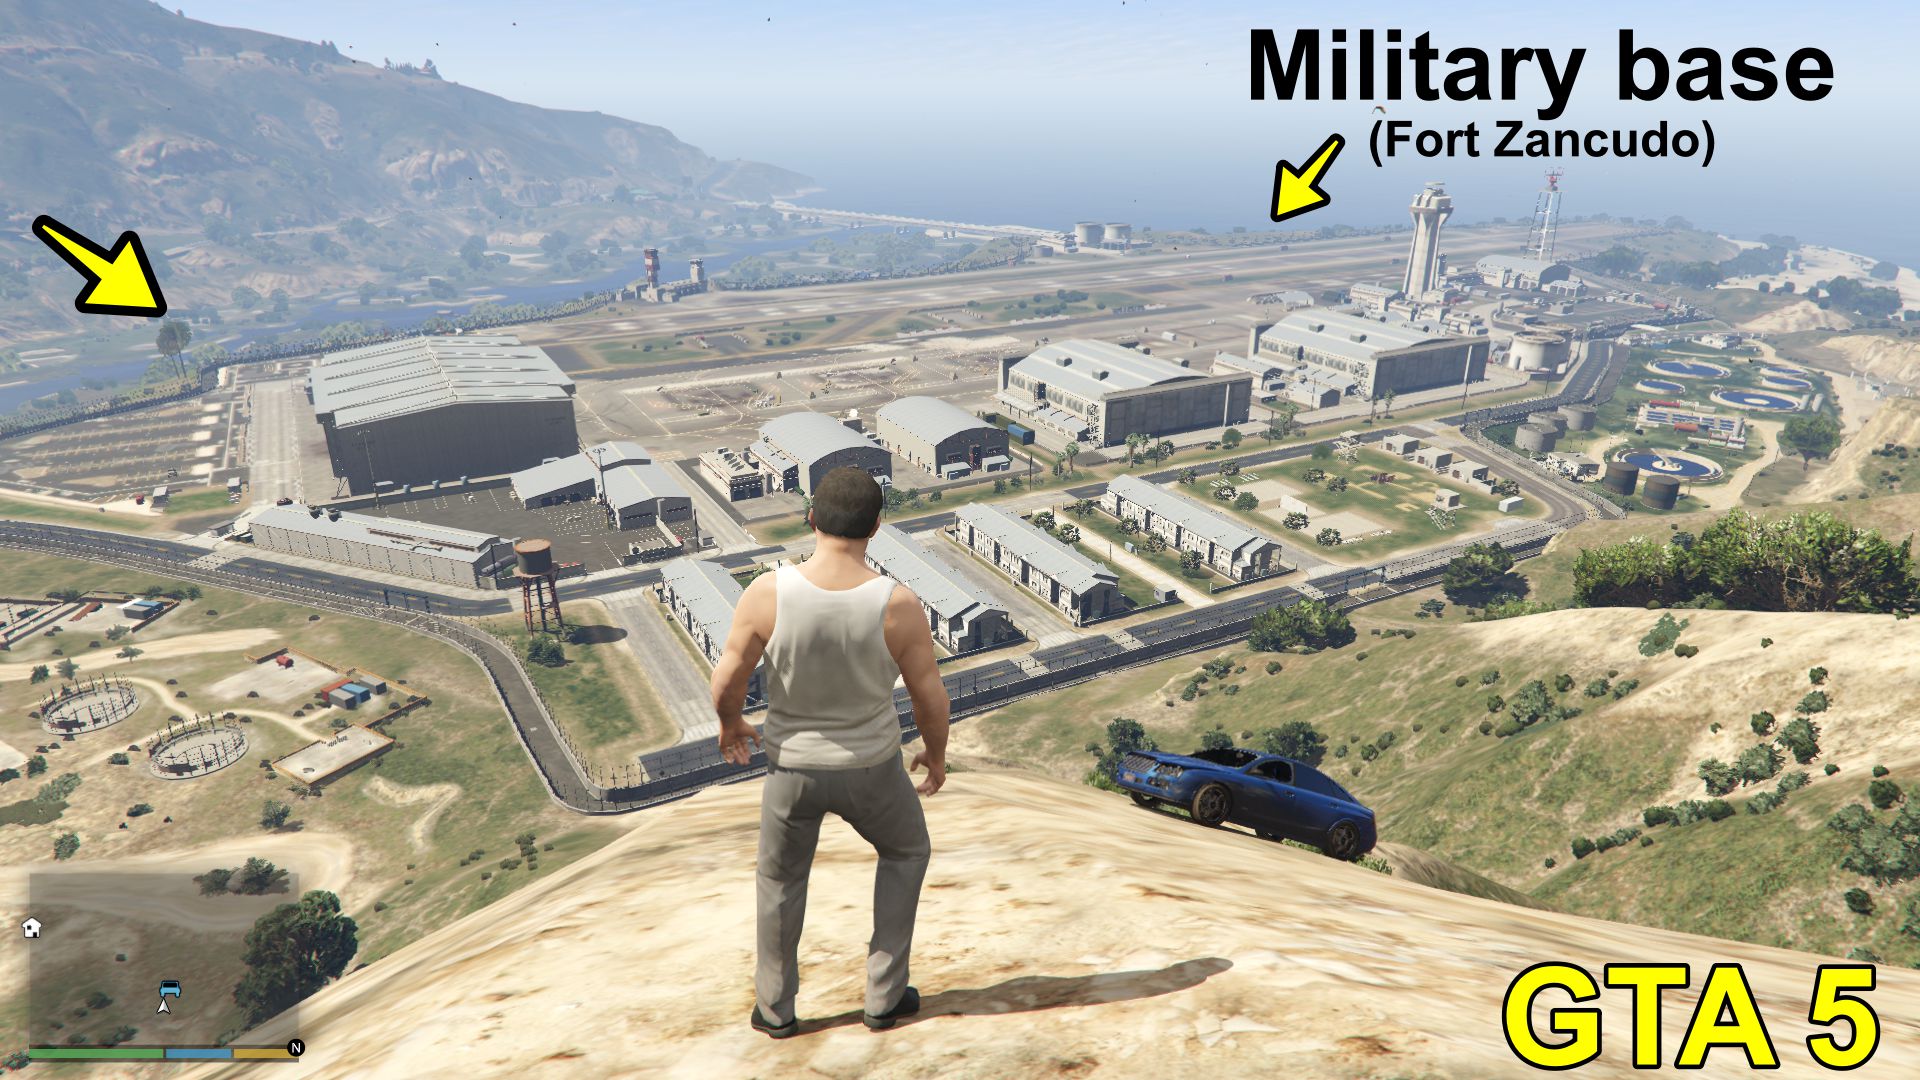 military base in GTA 5 -Fort Zancudo 